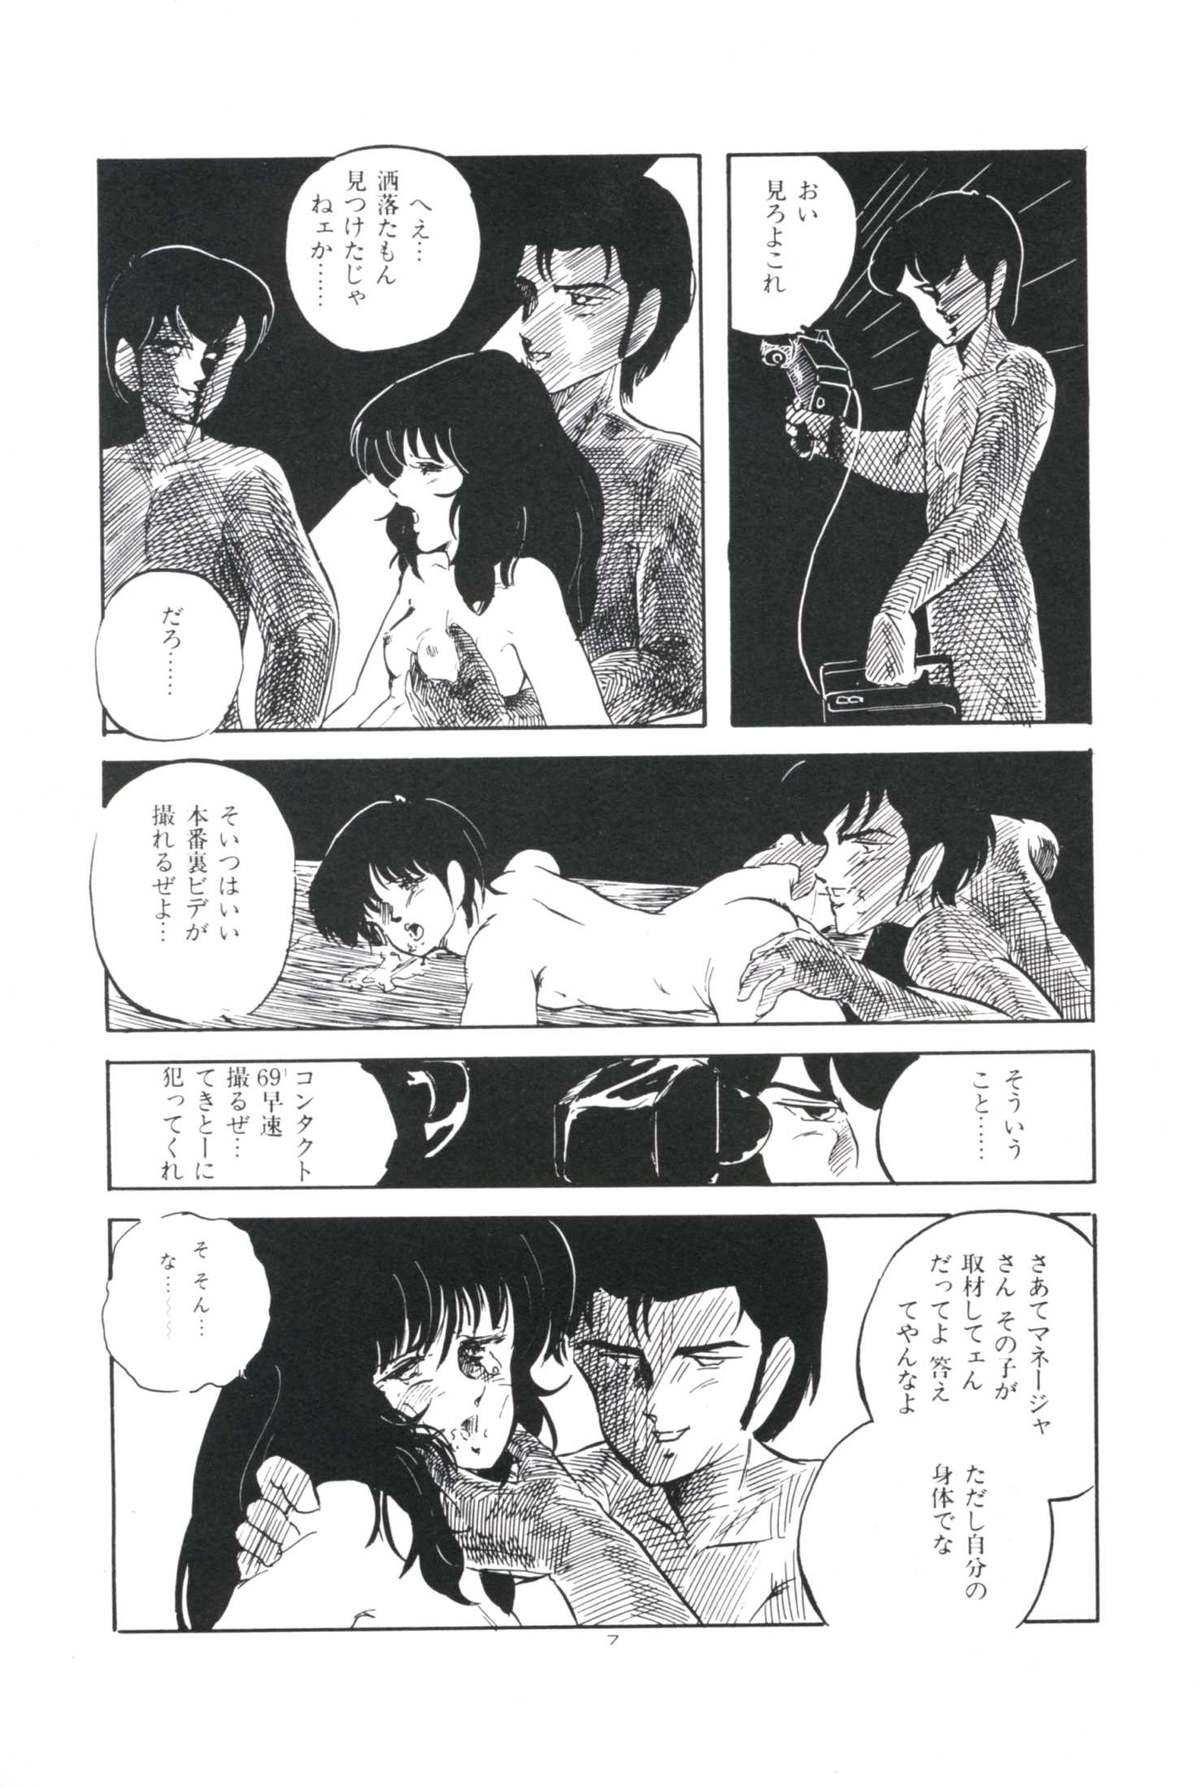 Spy Ikenai Yuugi Teamskeet - Page 11